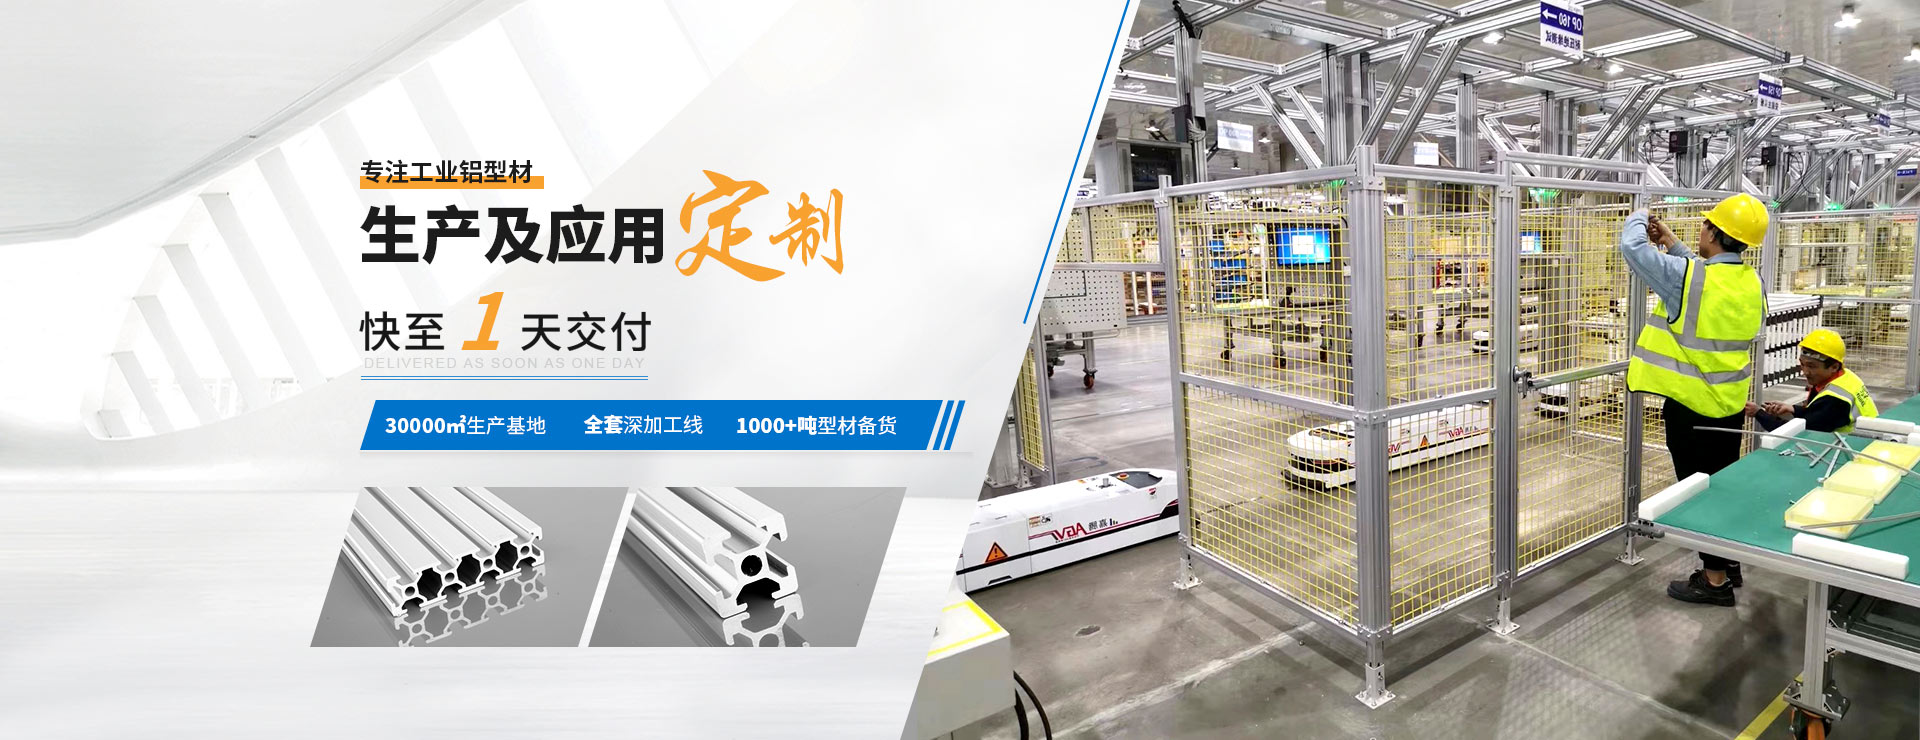 啟域專注工業鋁型材(cai)生產及應用定制快至1天交付(fu)